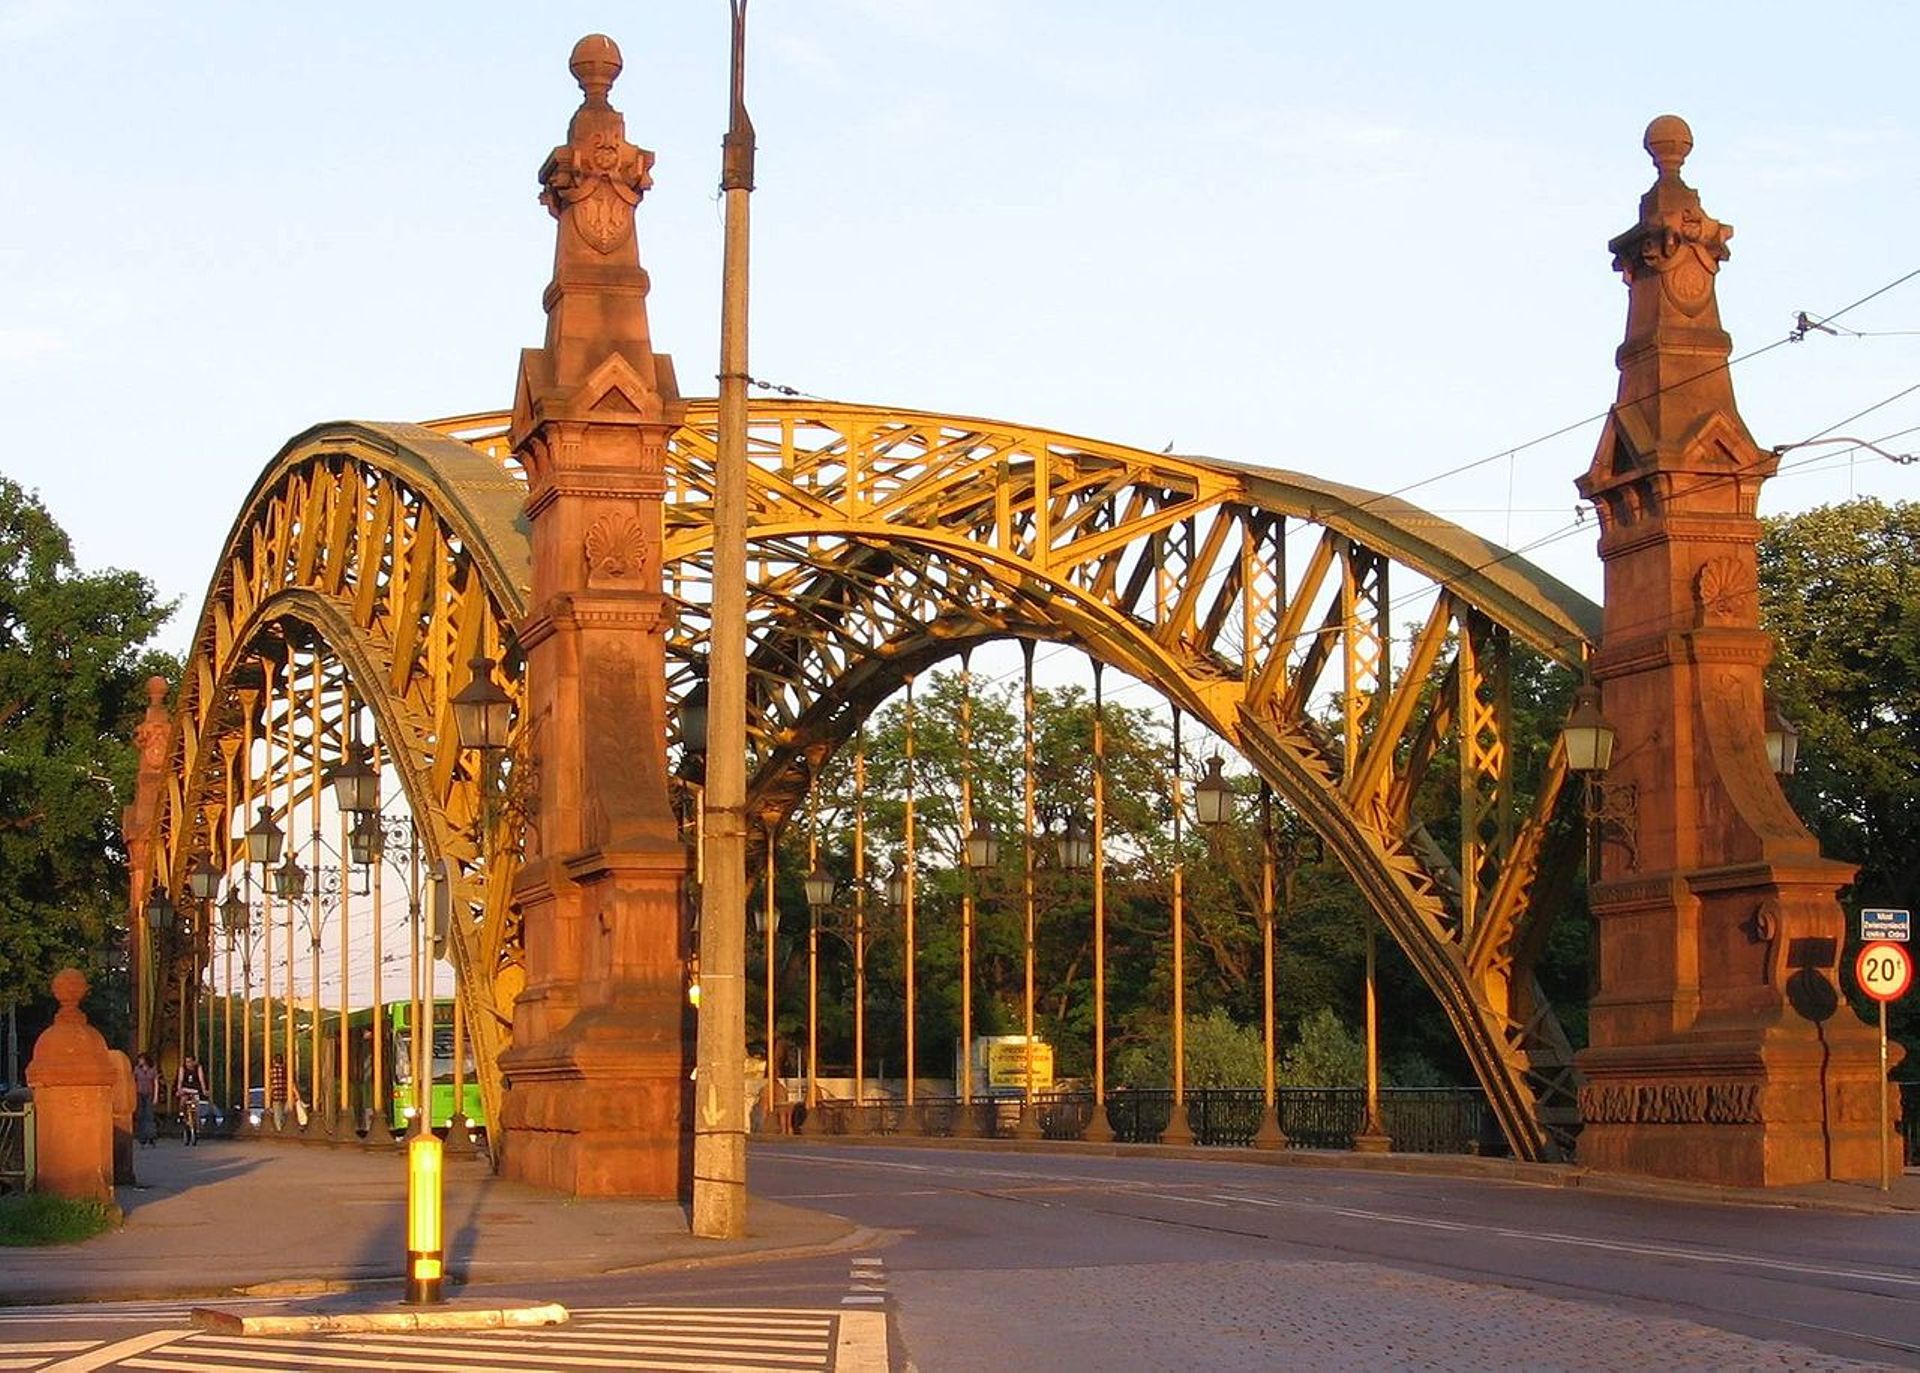 Trzy firmy chcą remontować most Zwierzyniecki we Wrocławiu